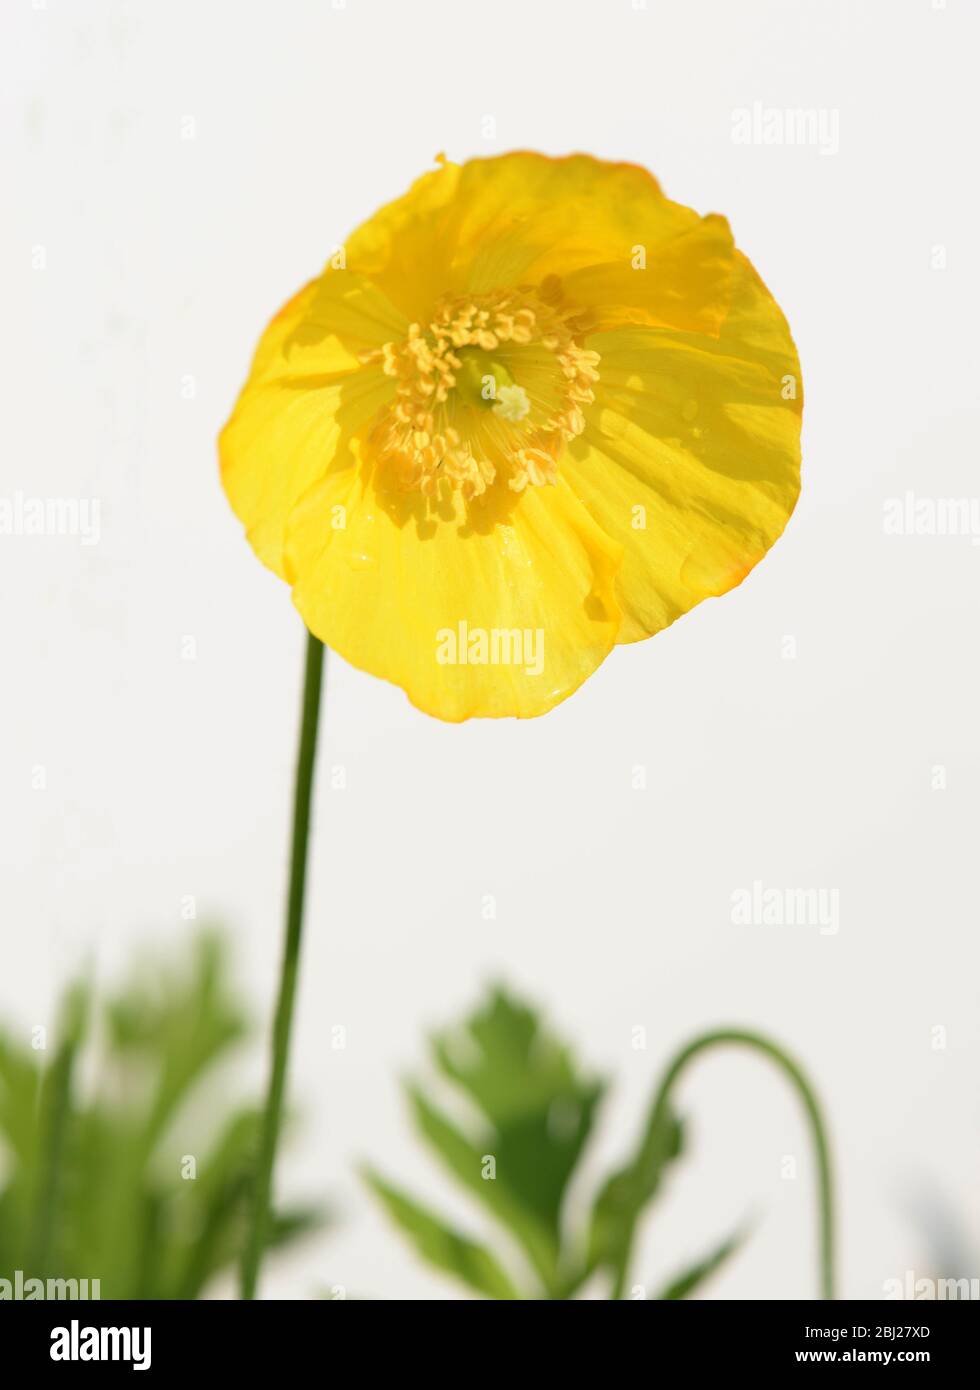 Le coquelicot gallois fleuri jaune, Menocopsis Cambrica photographié dans le jardin. Une feuille de papier blanc ou de carte a été utilisée pour éclairer l'usine. Banque D'Images